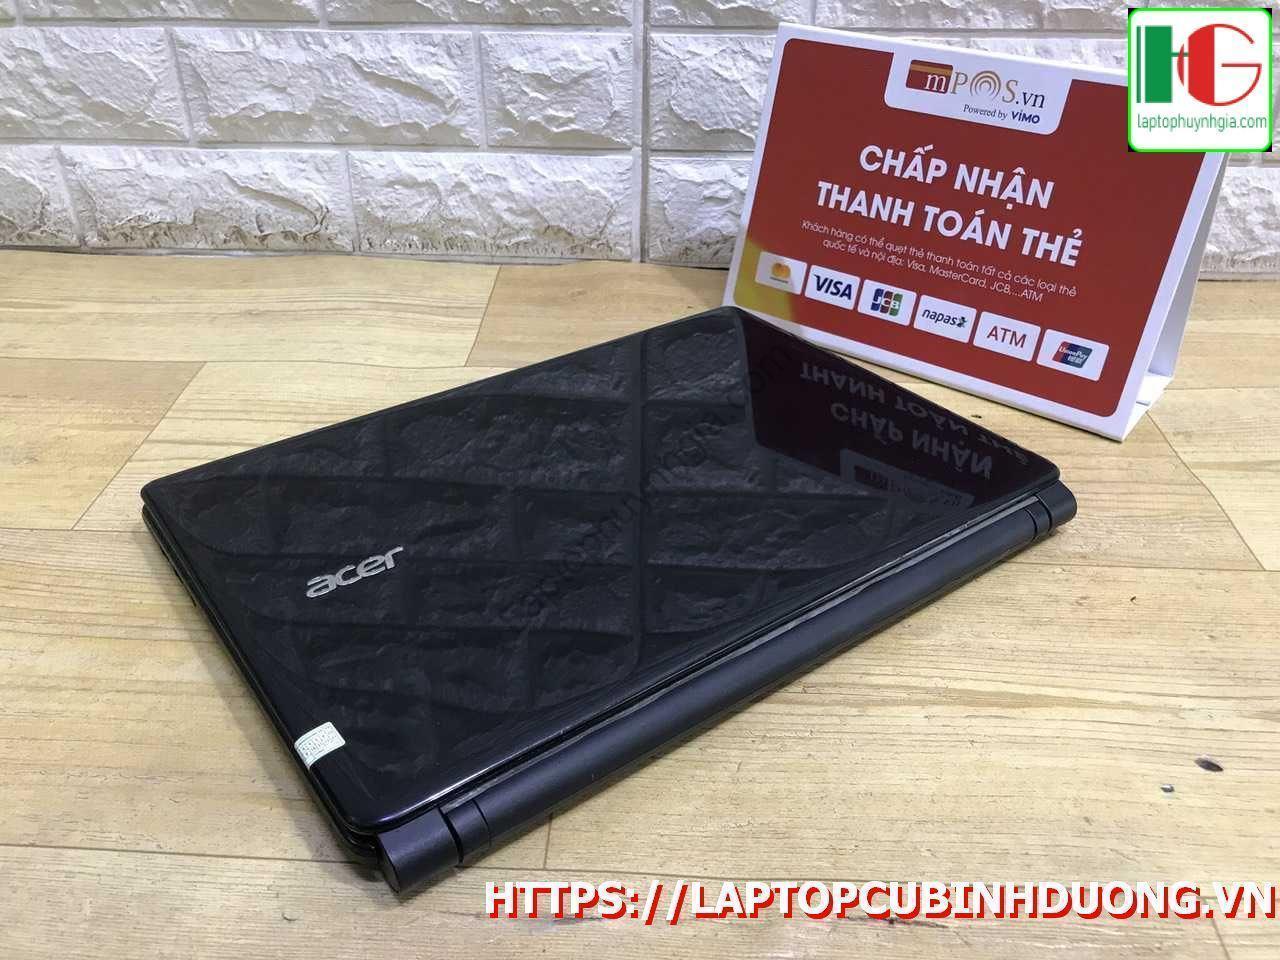 Laptop Acer E1 471 I3 3217u 4g 500g Lcd 14 Laptopcubinhduong.vn 2 [kích Thước Gốc] Result